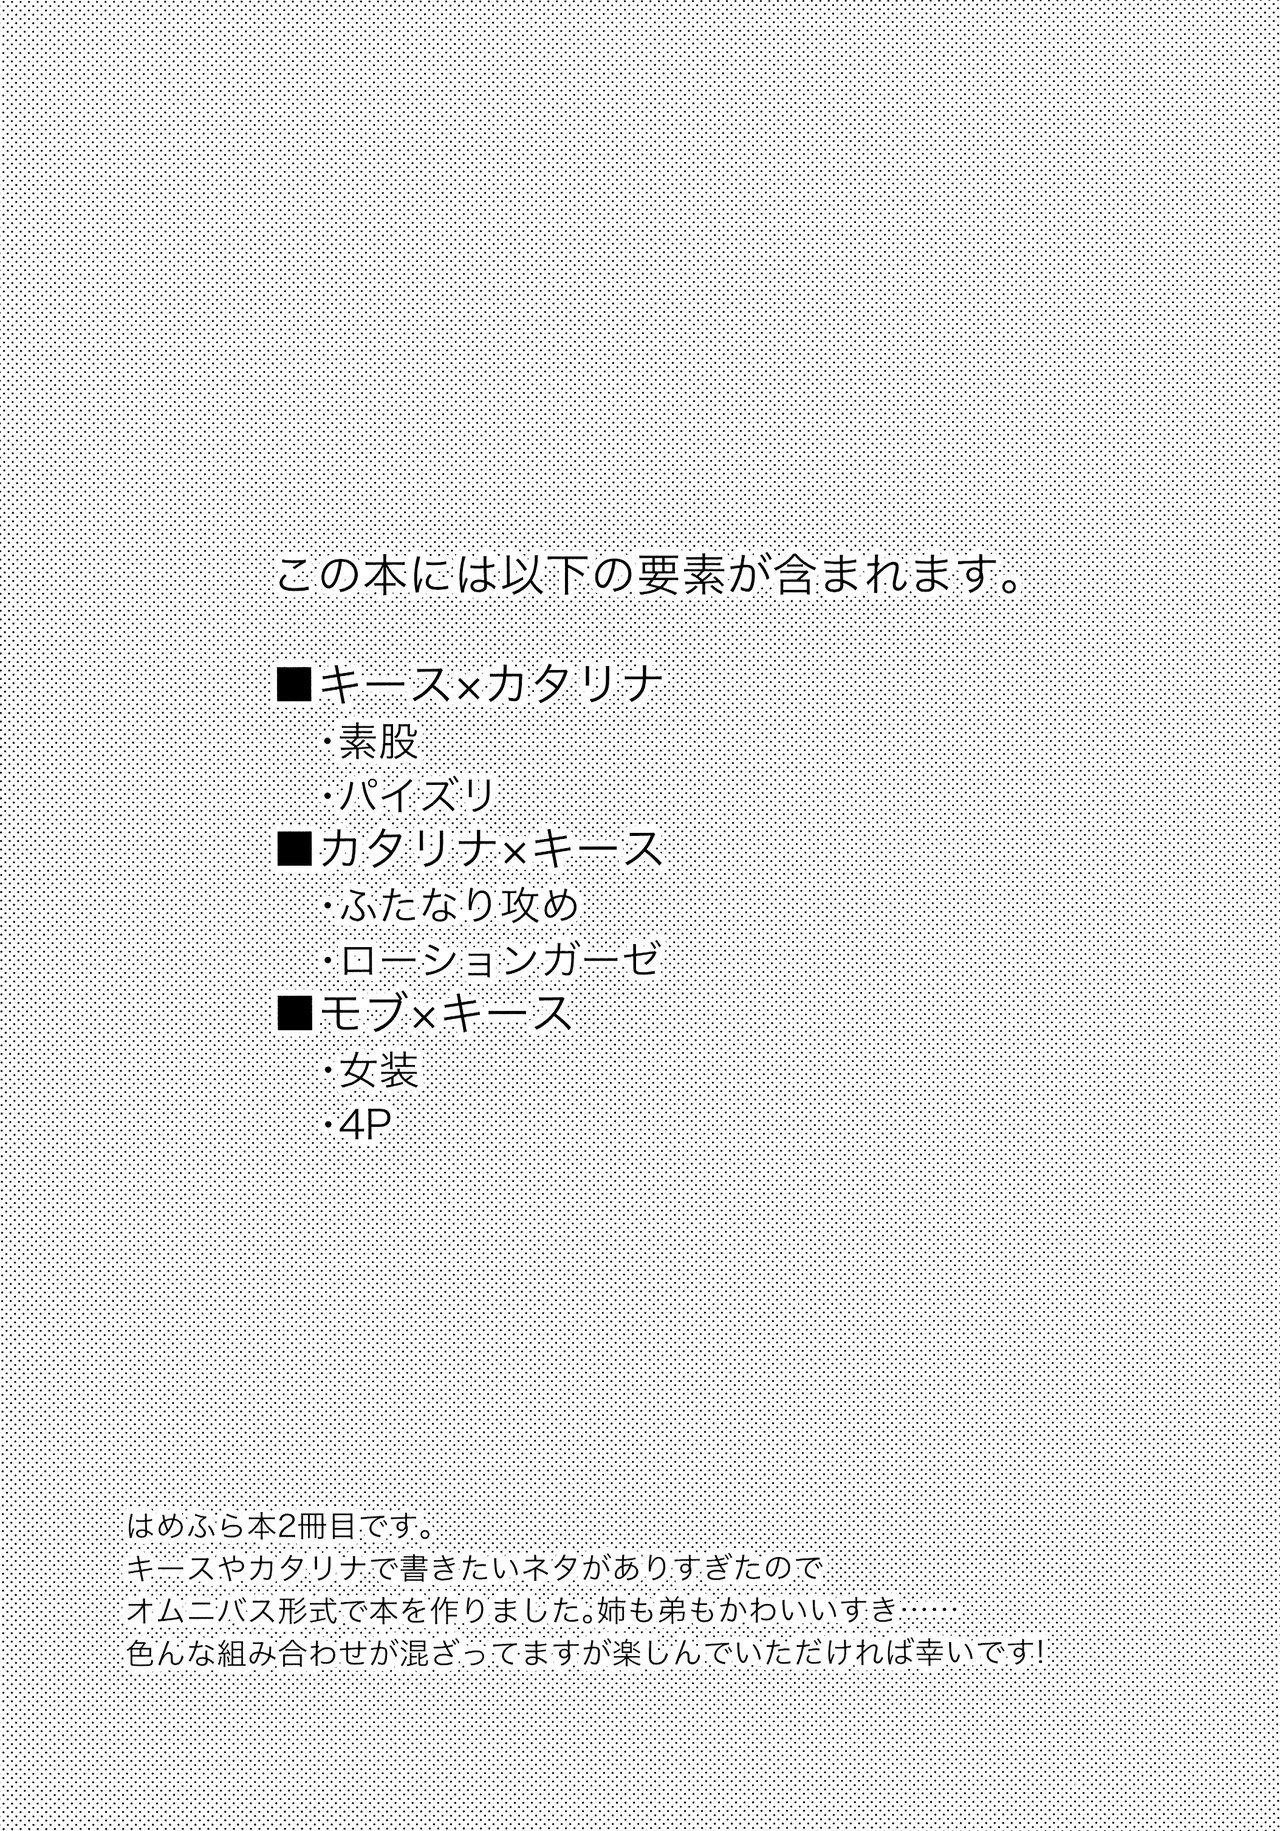 Unshaved Class Kyoudai no Etchi na Hon - Otome game no hametsu flag shika nai akuyaku reijou ni tensei shiteshimatta... Buttplug - Page 5